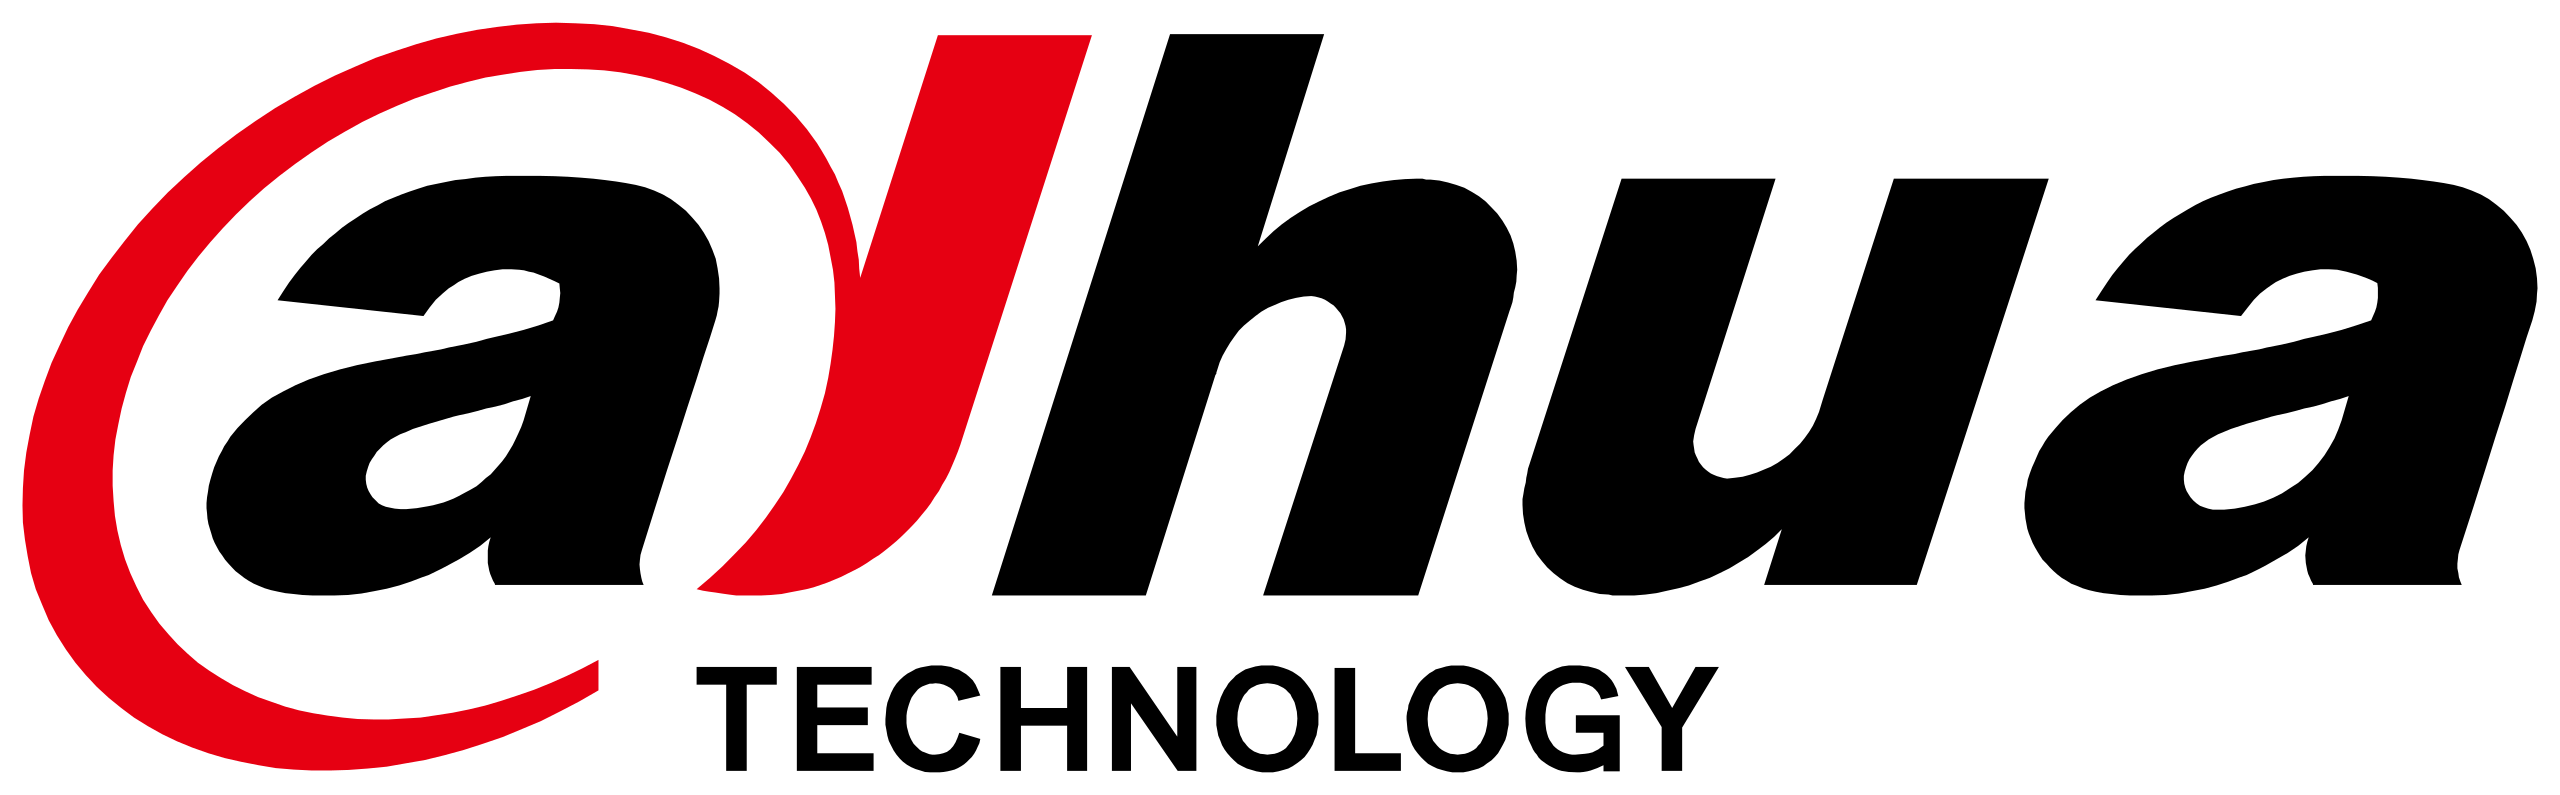 Dahua_Technology_logo.svg_